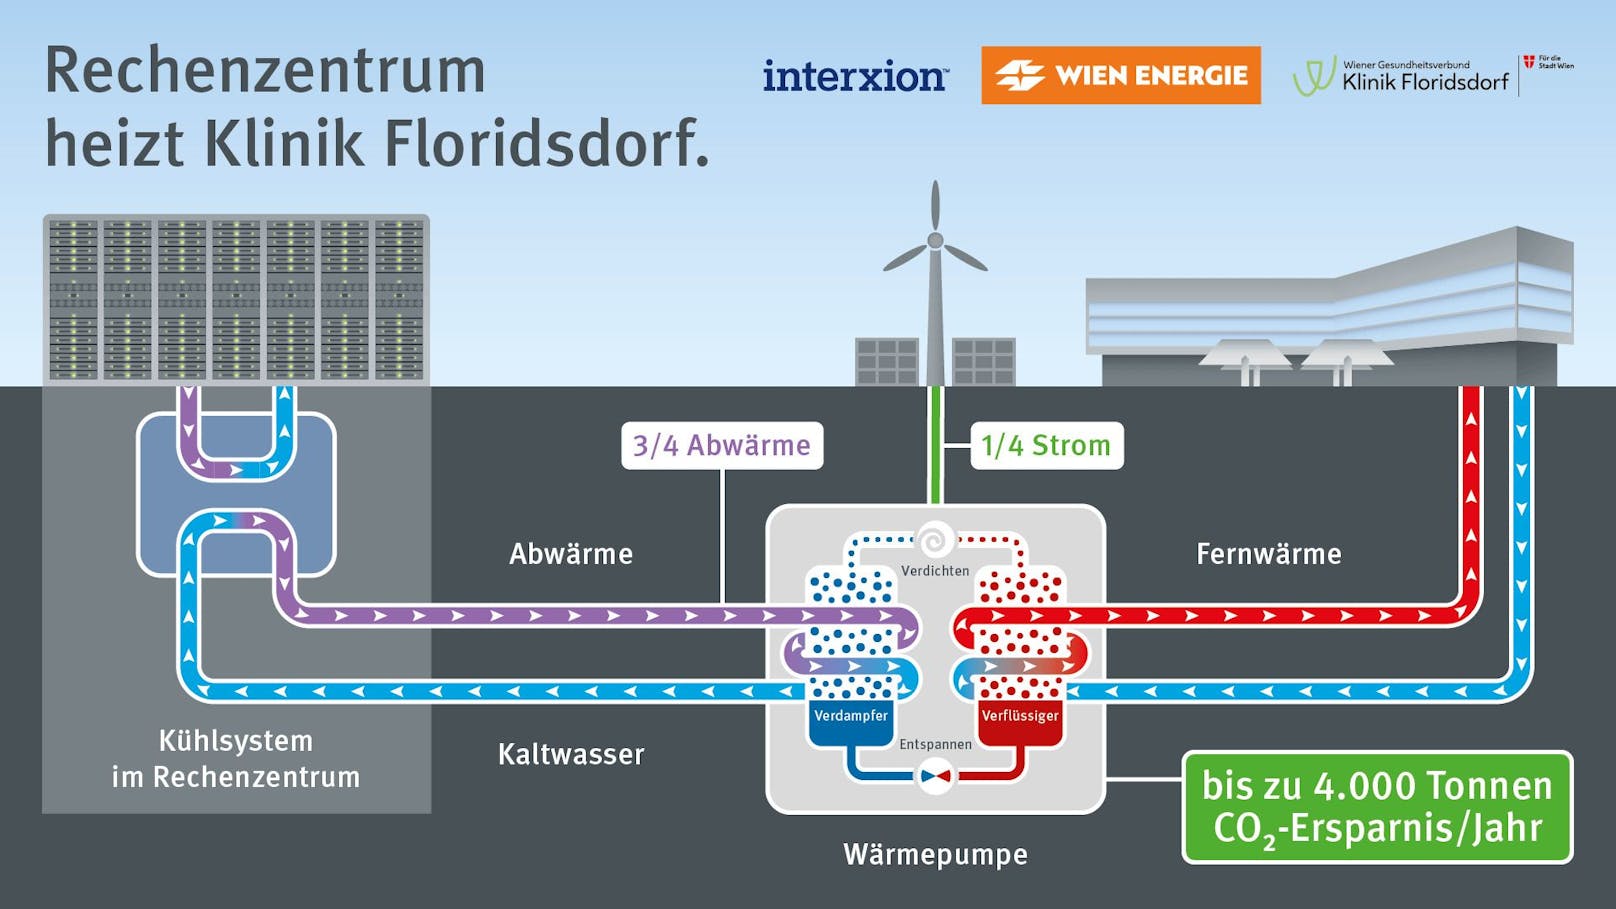 Das Rechenzentrum von "Digital Realty Österreich" in Wien-Floridsdorf wird ab Herbst die Klinik Floridsdorf beheizen. Die "Wien Energie" wird dafür eine Wärmepumpenanlage errichten, die an der Kühlanlage des Rechenzentrums angeschlossen wird.